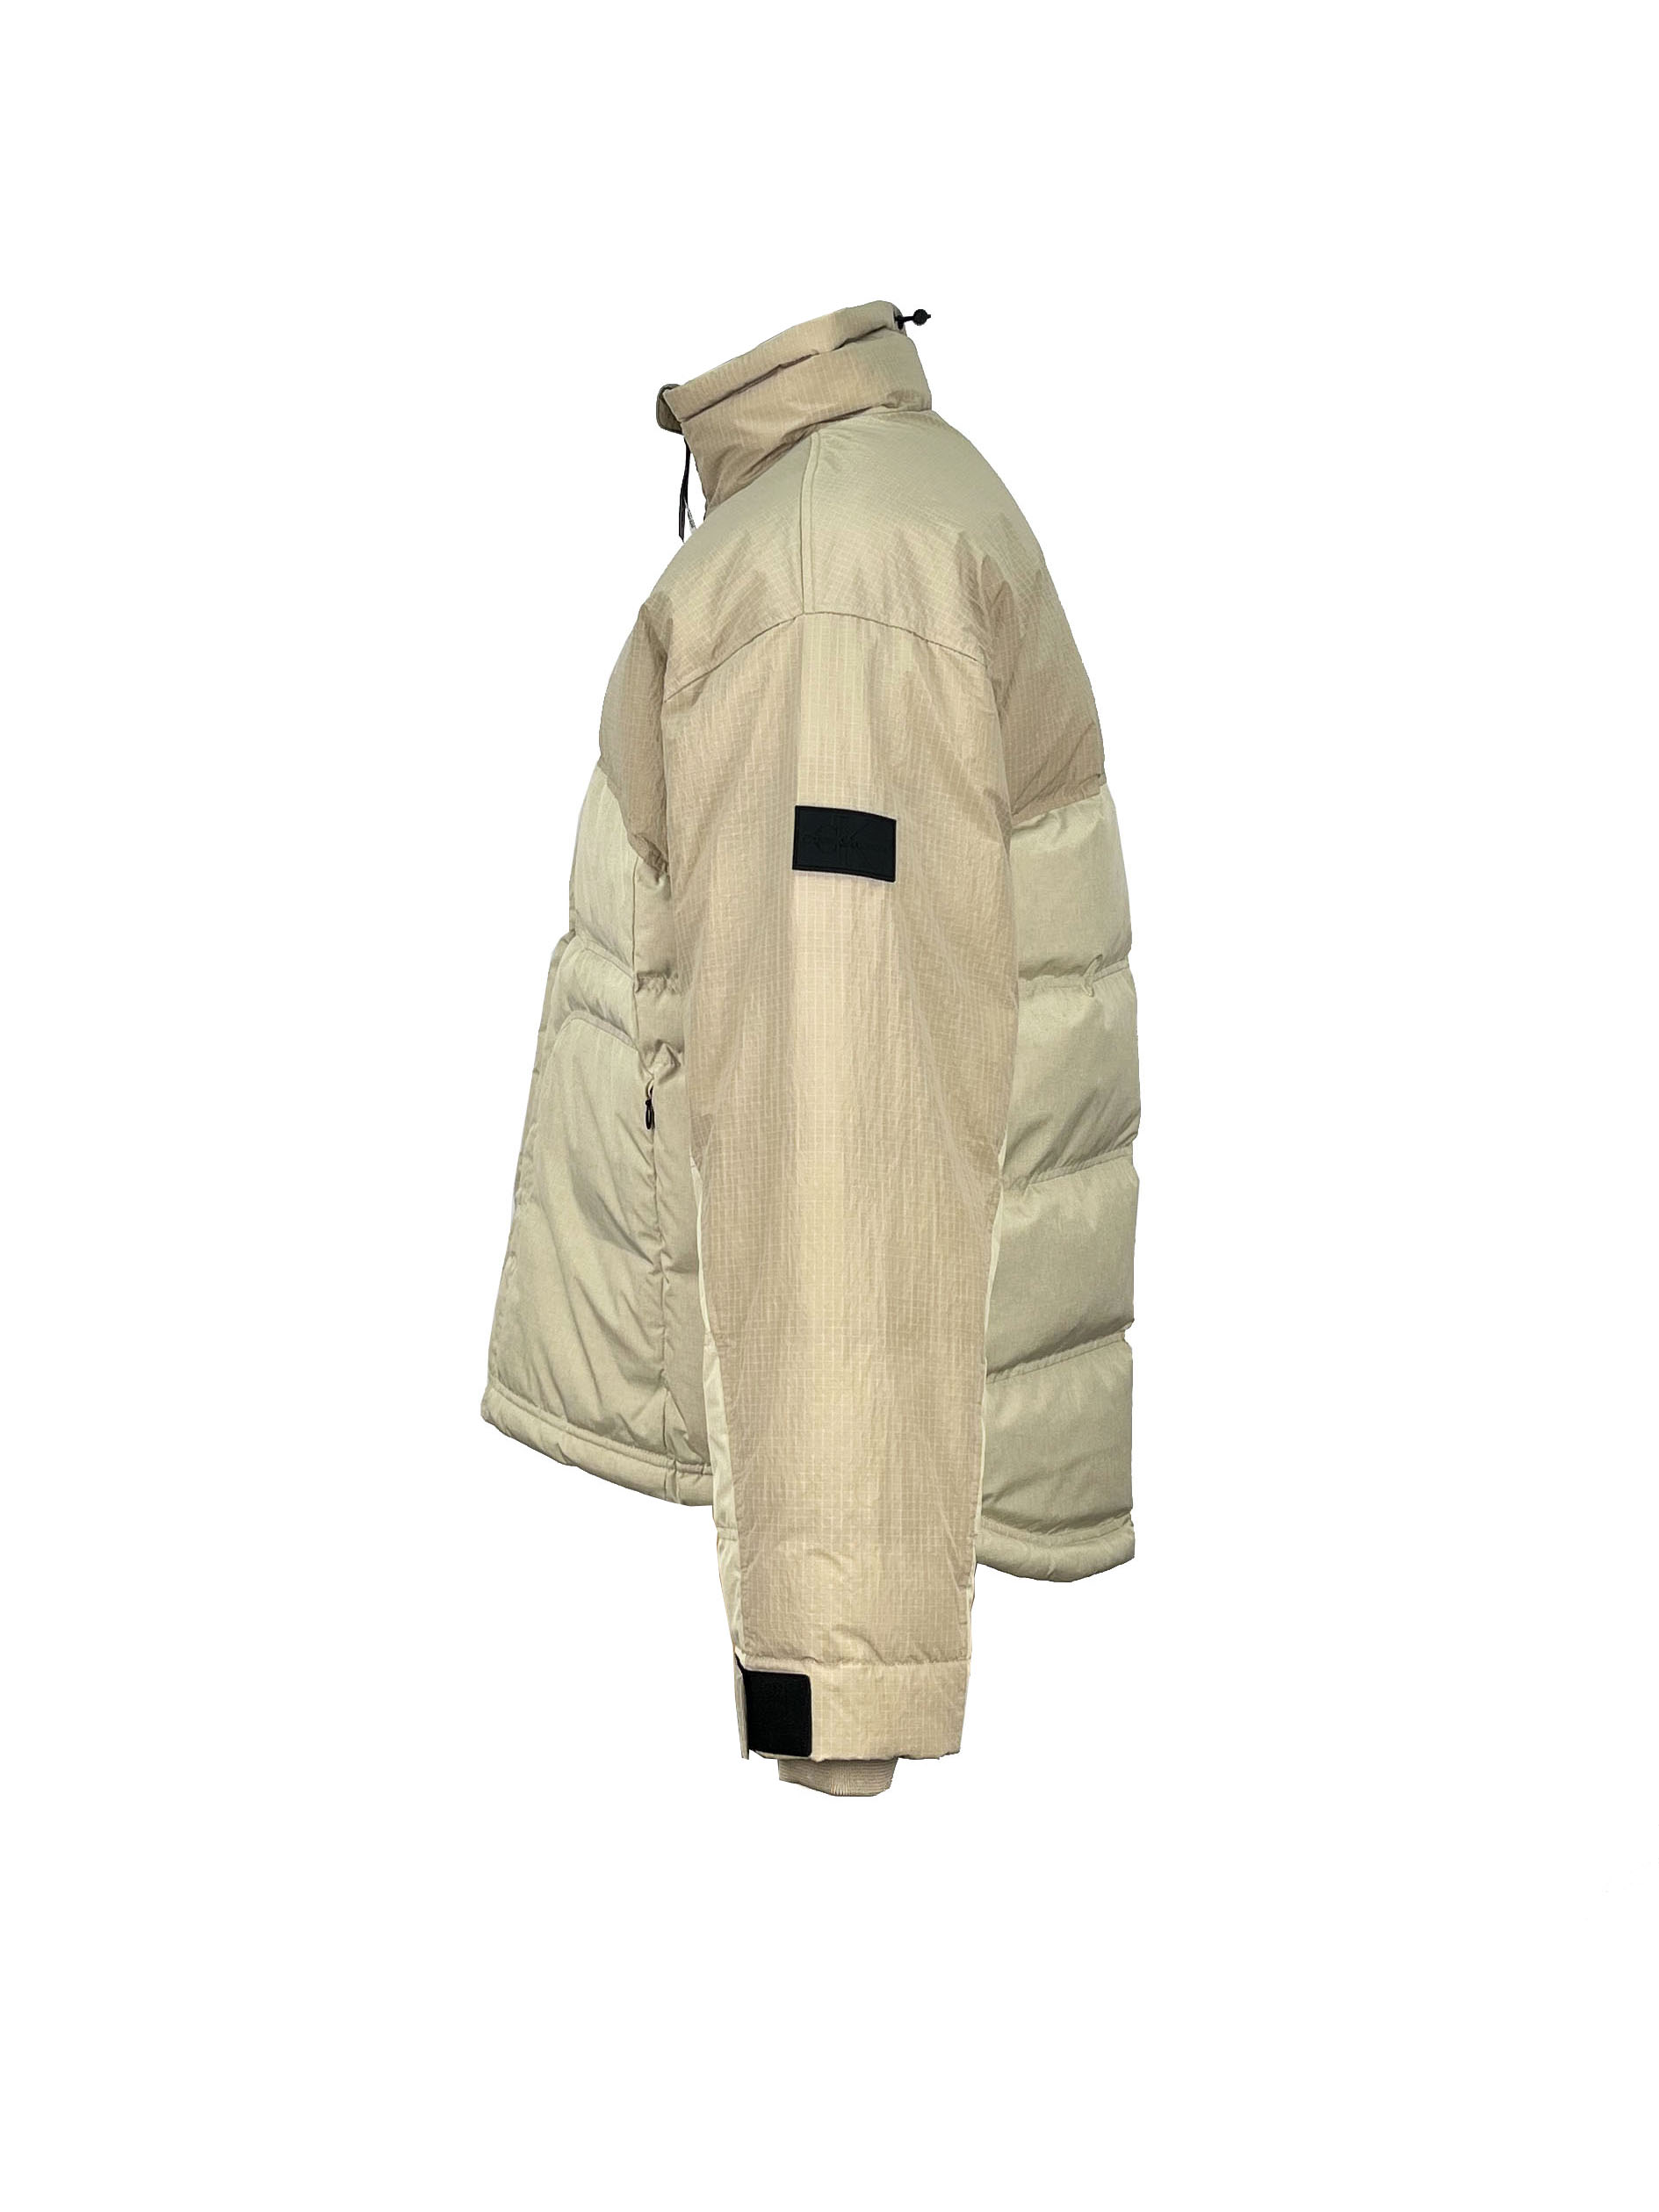 4.padded jacket.(3)